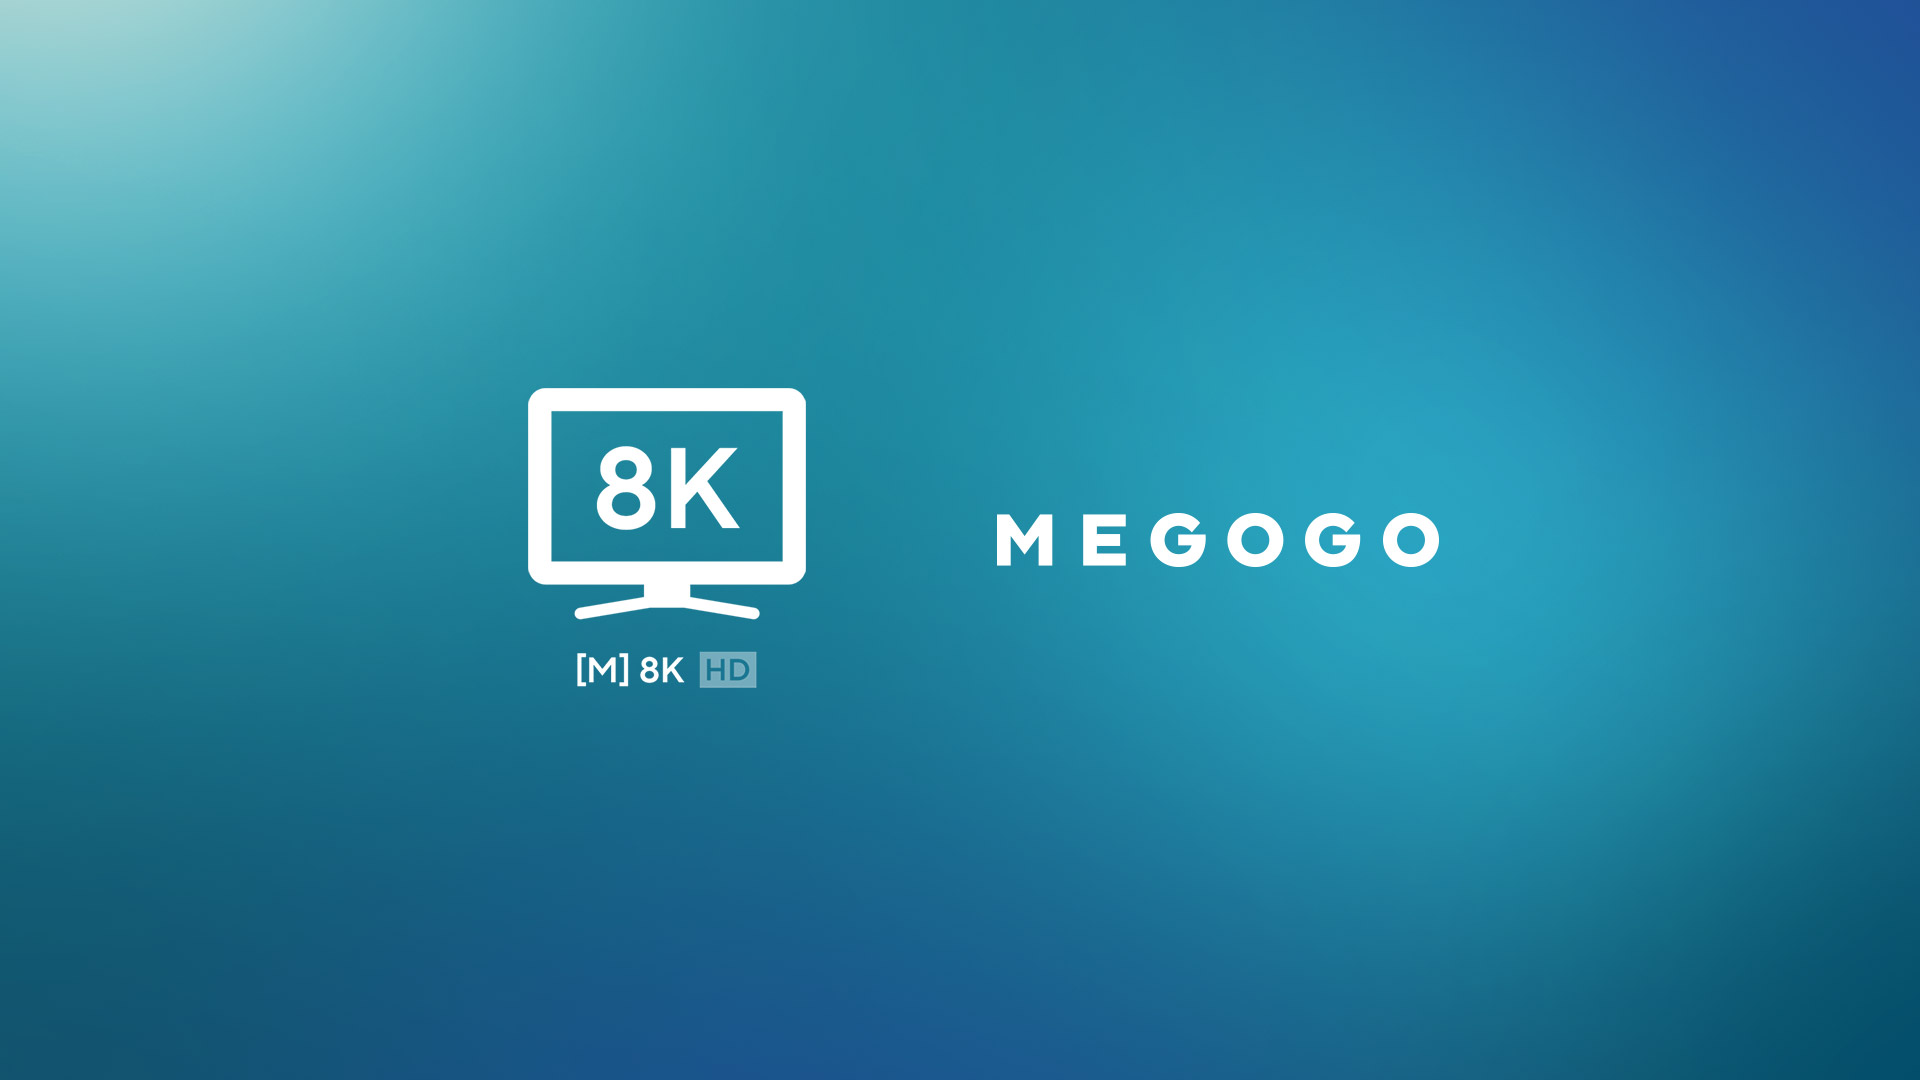 MEGOGO lance la première chaîne en Ukraine à diffuser en résolution 8K